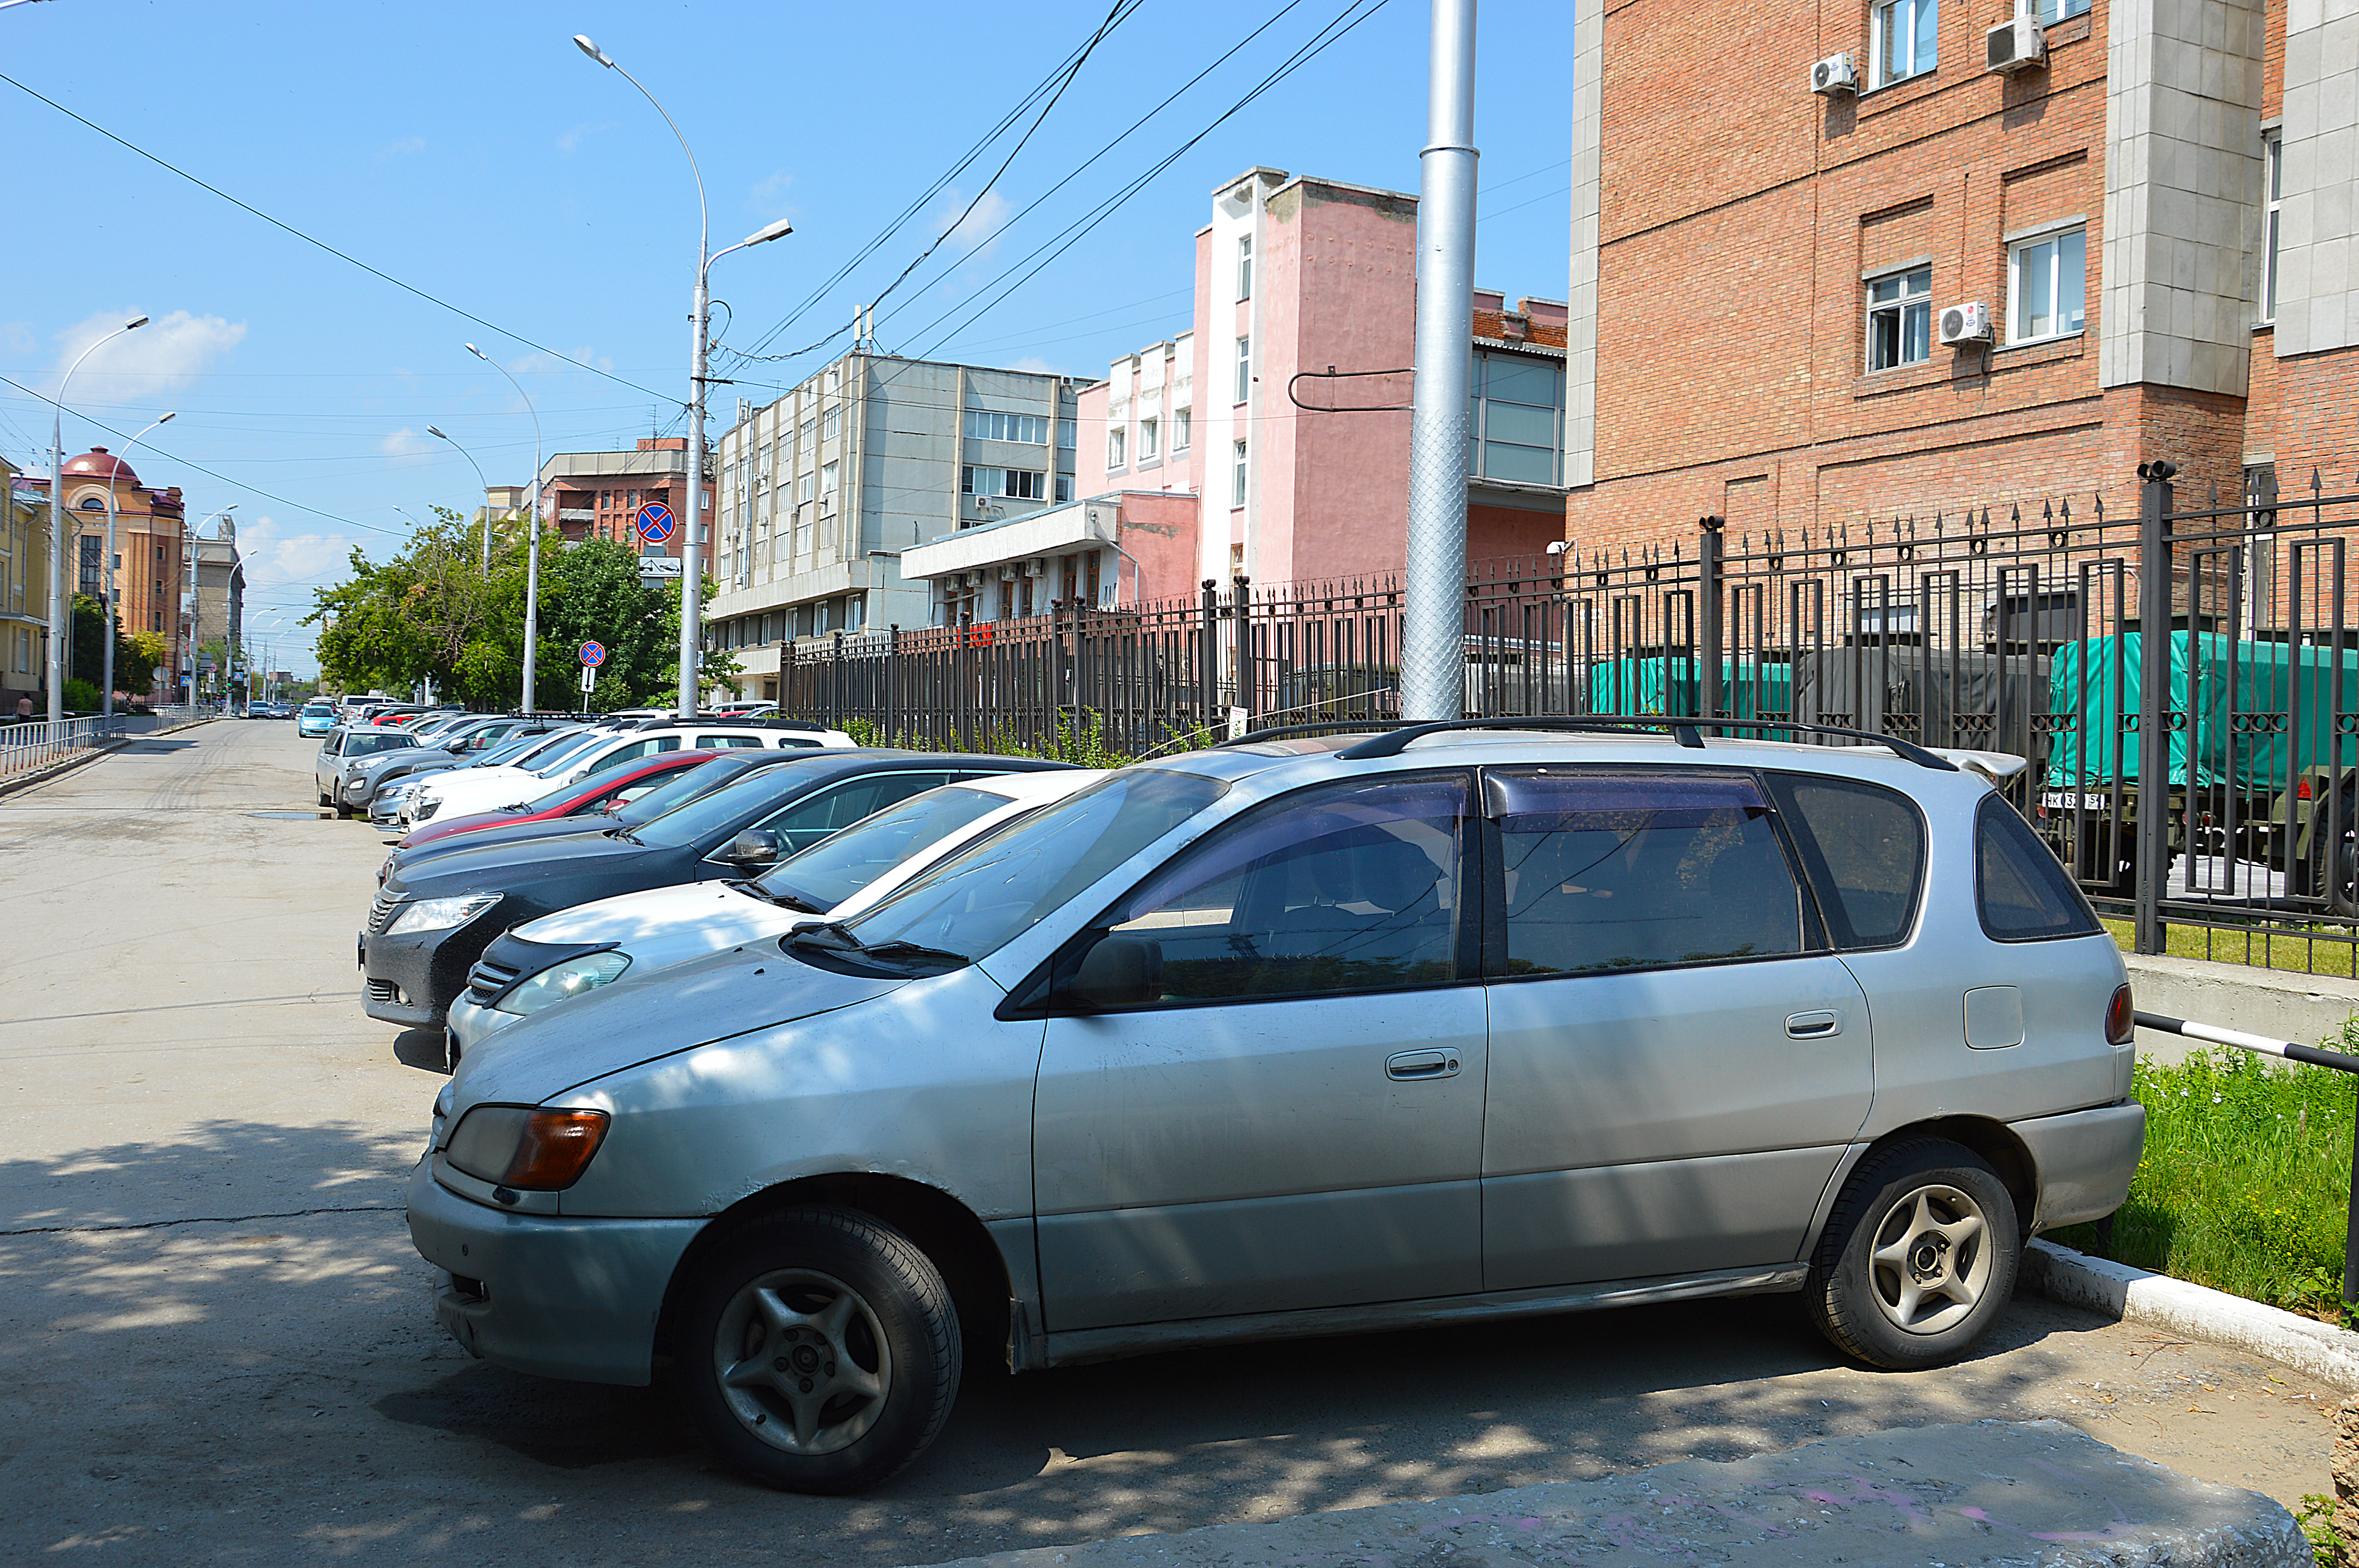 Картрайт продажа авто. Продажа авто в Новосибирске. Продам машину в Новосибирске. Продам авто в новосибирске